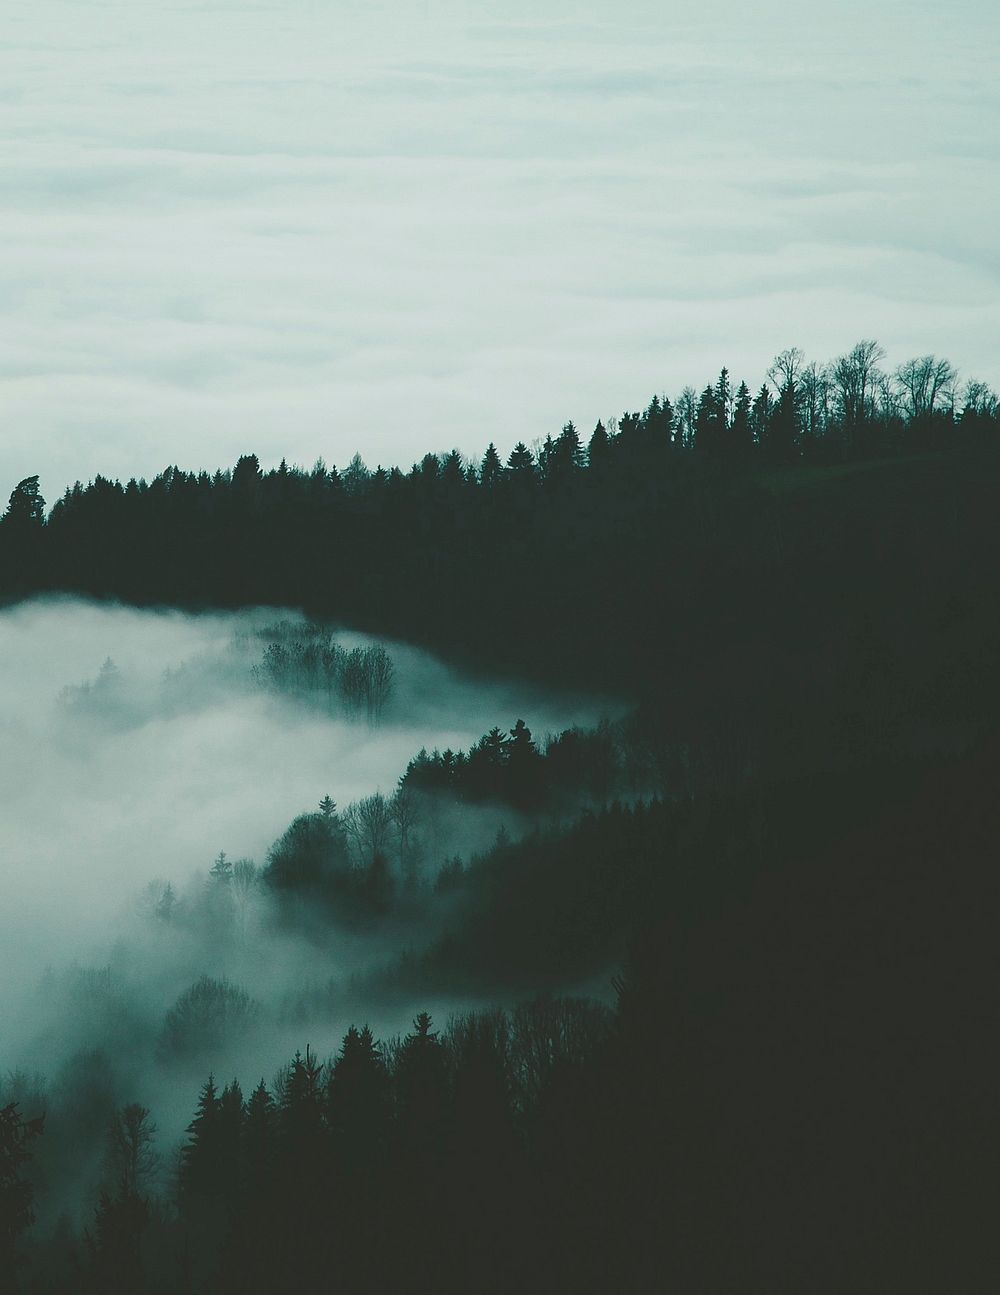 Free misty mountains image, public domain landscape CC0 photo.